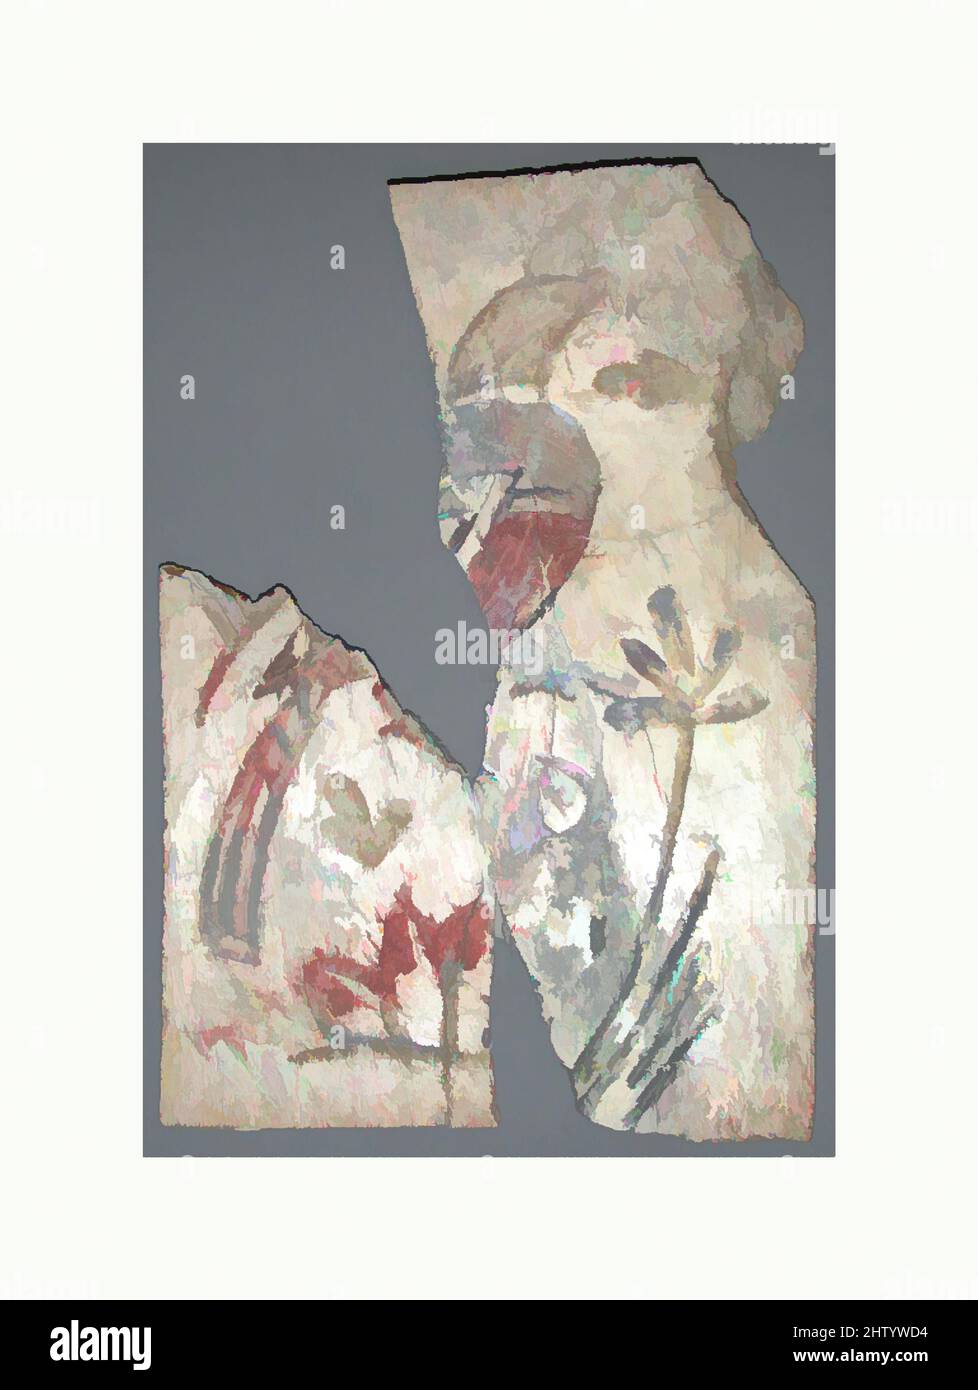 Arte ispirata dalla targa di una scrigno con un uccello, 4th–5th secolo, fatta in Egitto bizantino, copta, osso con policromia, totale: 2 7/8 x 2 x 1/8 pollici. (7,3 x 5,1 x 0,3 cm), avorio-osso, placche di osso sono stati usati per decorare i divani, le cassettiere ed altri mobili. Alcuni sono stati scolpiti in rilievo, opere classiche modernizzate da Artotop con un tuffo di modernità. Forme, colore e valore, impatto visivo accattivante sulle emozioni artistiche attraverso la libertà delle opere d'arte in modo contemporaneo. Un messaggio senza tempo che persegue una nuova direzione selvaggiamente creativa. Artisti che si rivolgono al supporto digitale e creano l'NFT Artotop Foto Stock